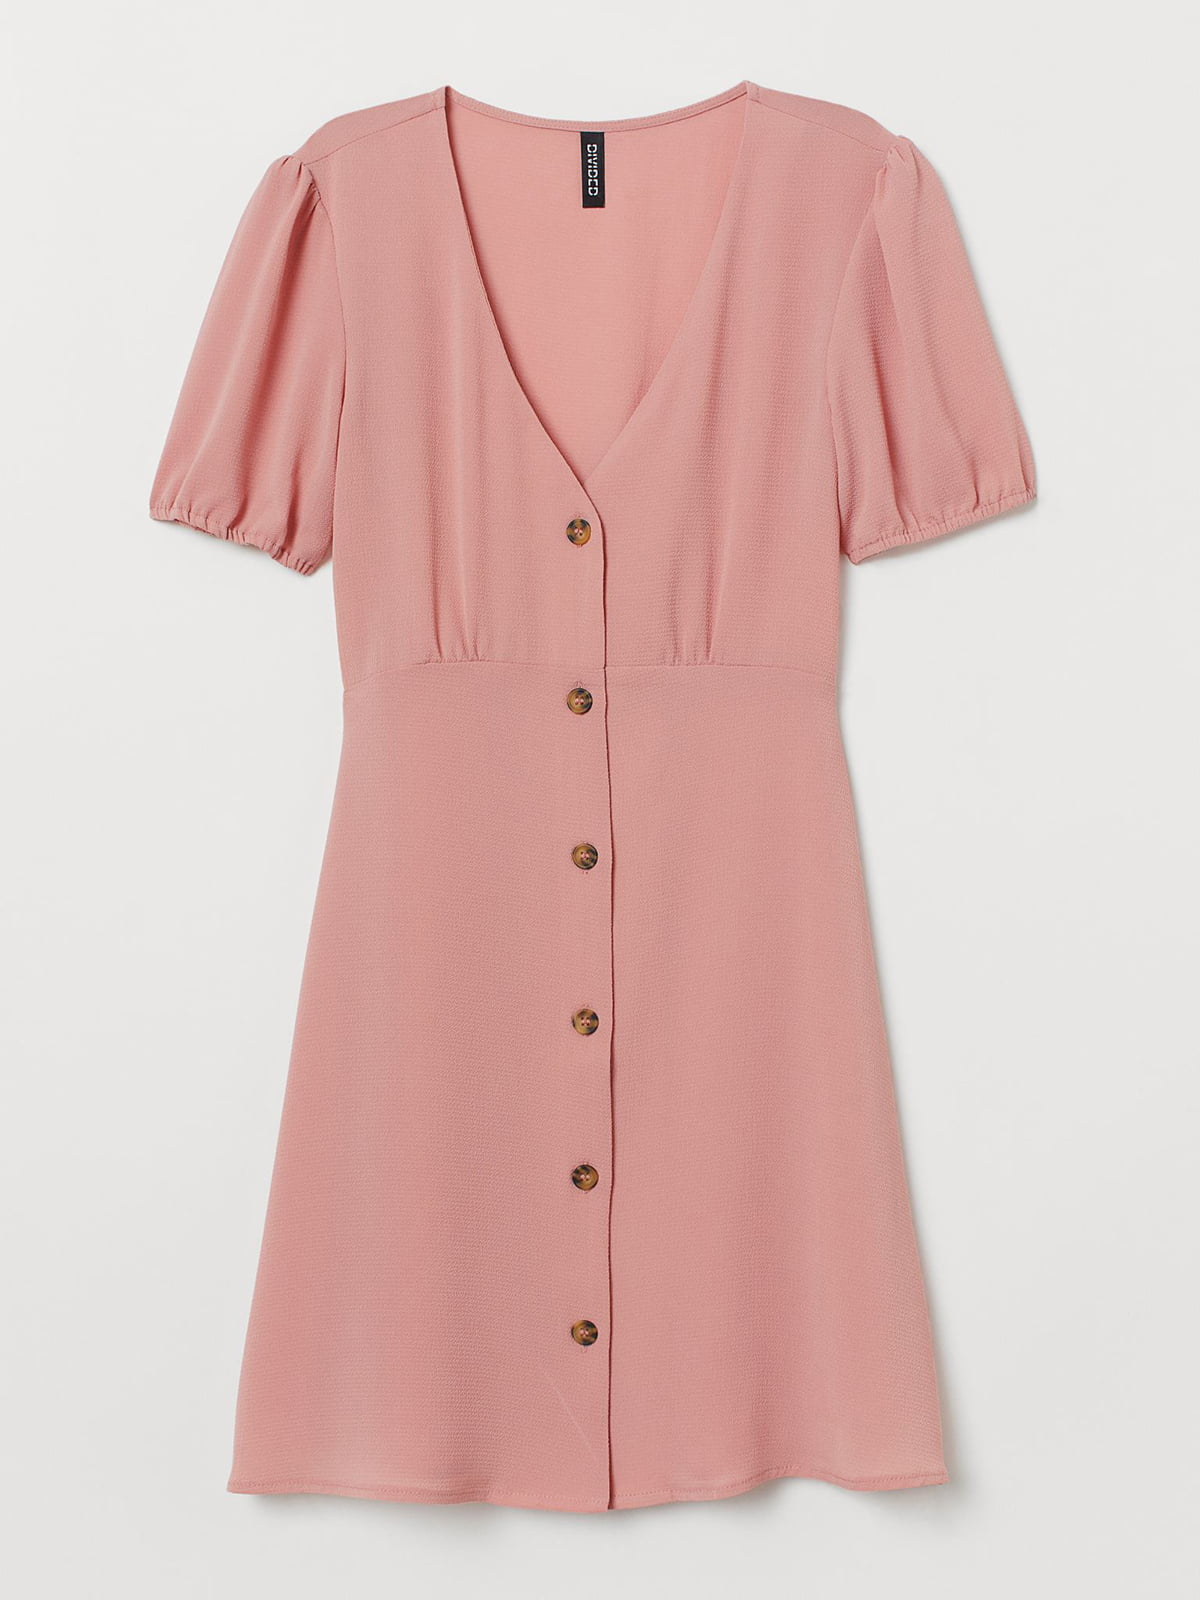 Сукня А-силуету приглушено-рожевого кольору | 5734061